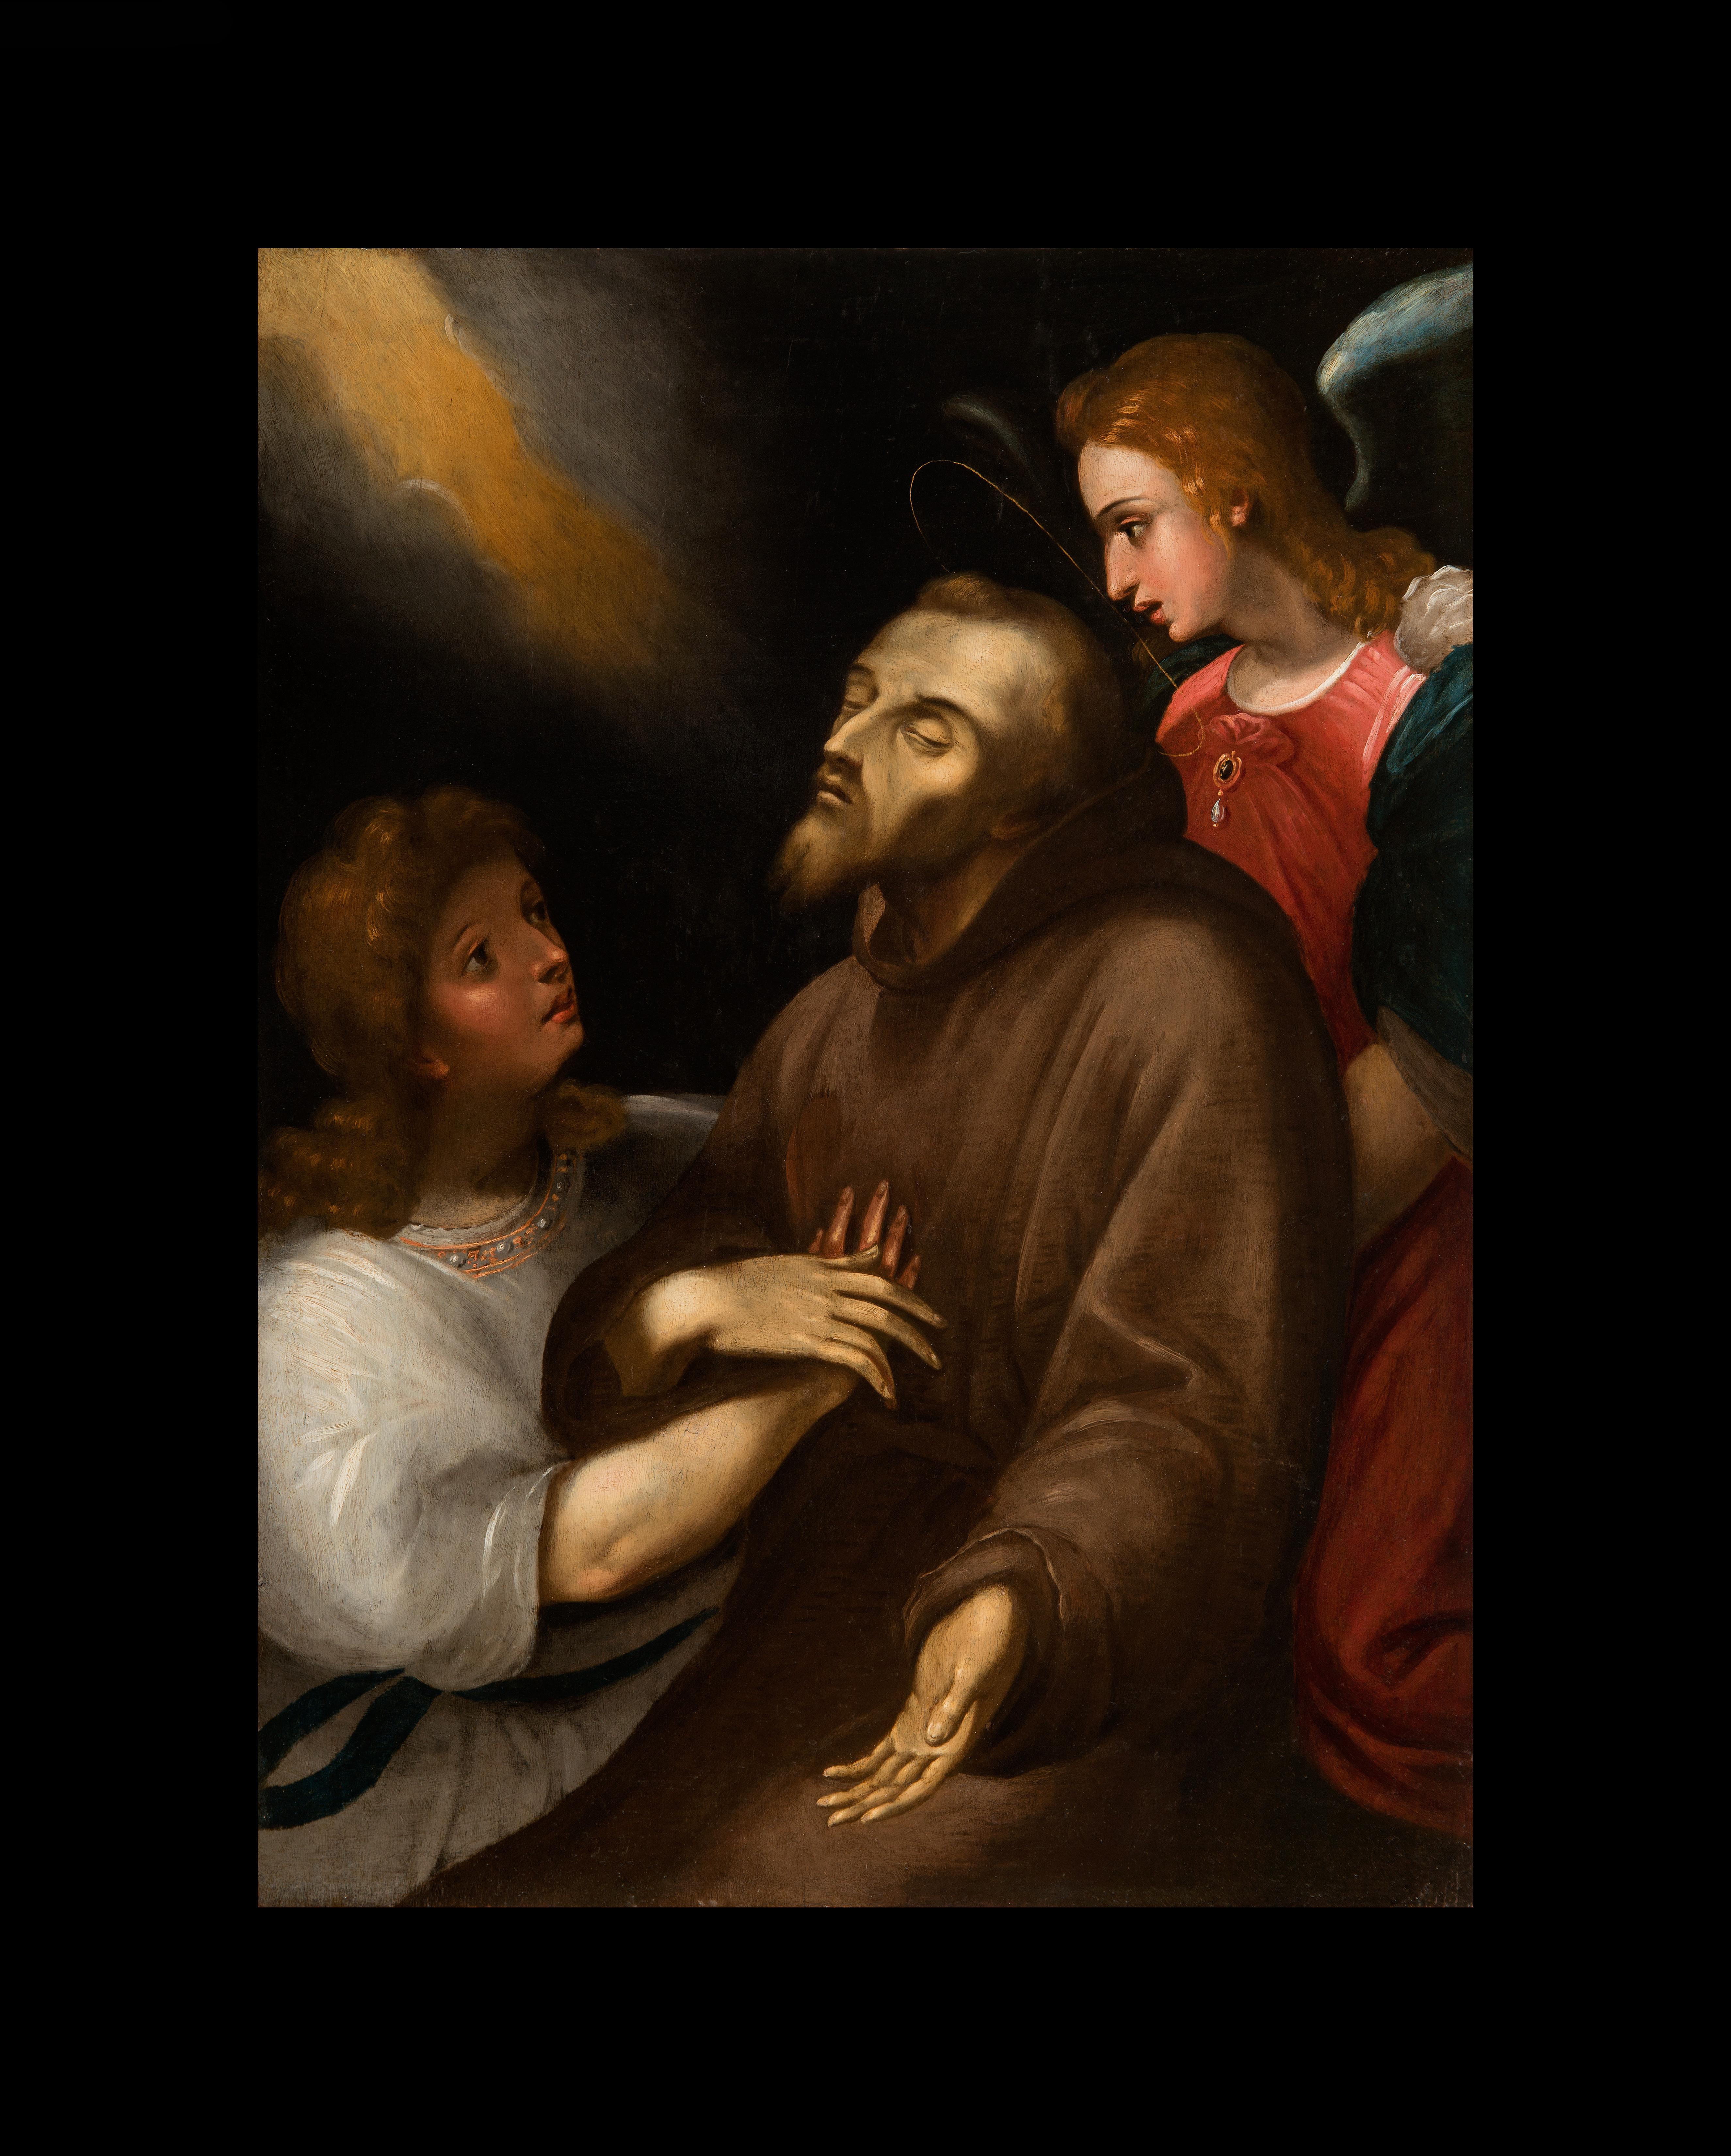 Anonimo pittore del XVII Secolo, da Giuseppe Cesari, L'estasi di San Francesco - Painting de Unknown